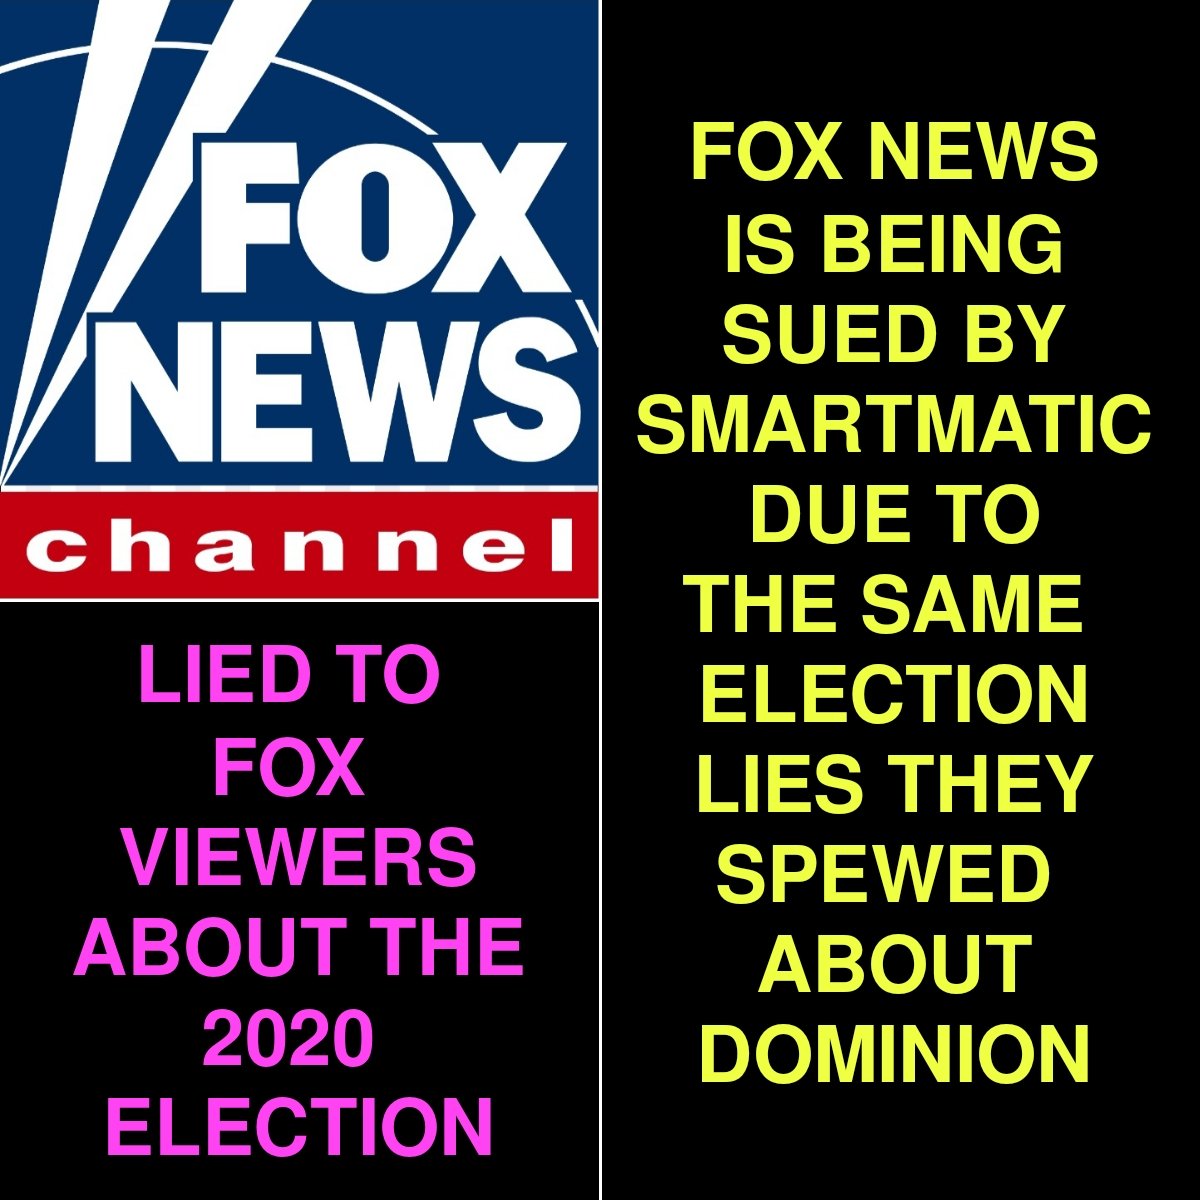 #FoxNewsLiesToYou 
#FoxNewsIsFakeNews